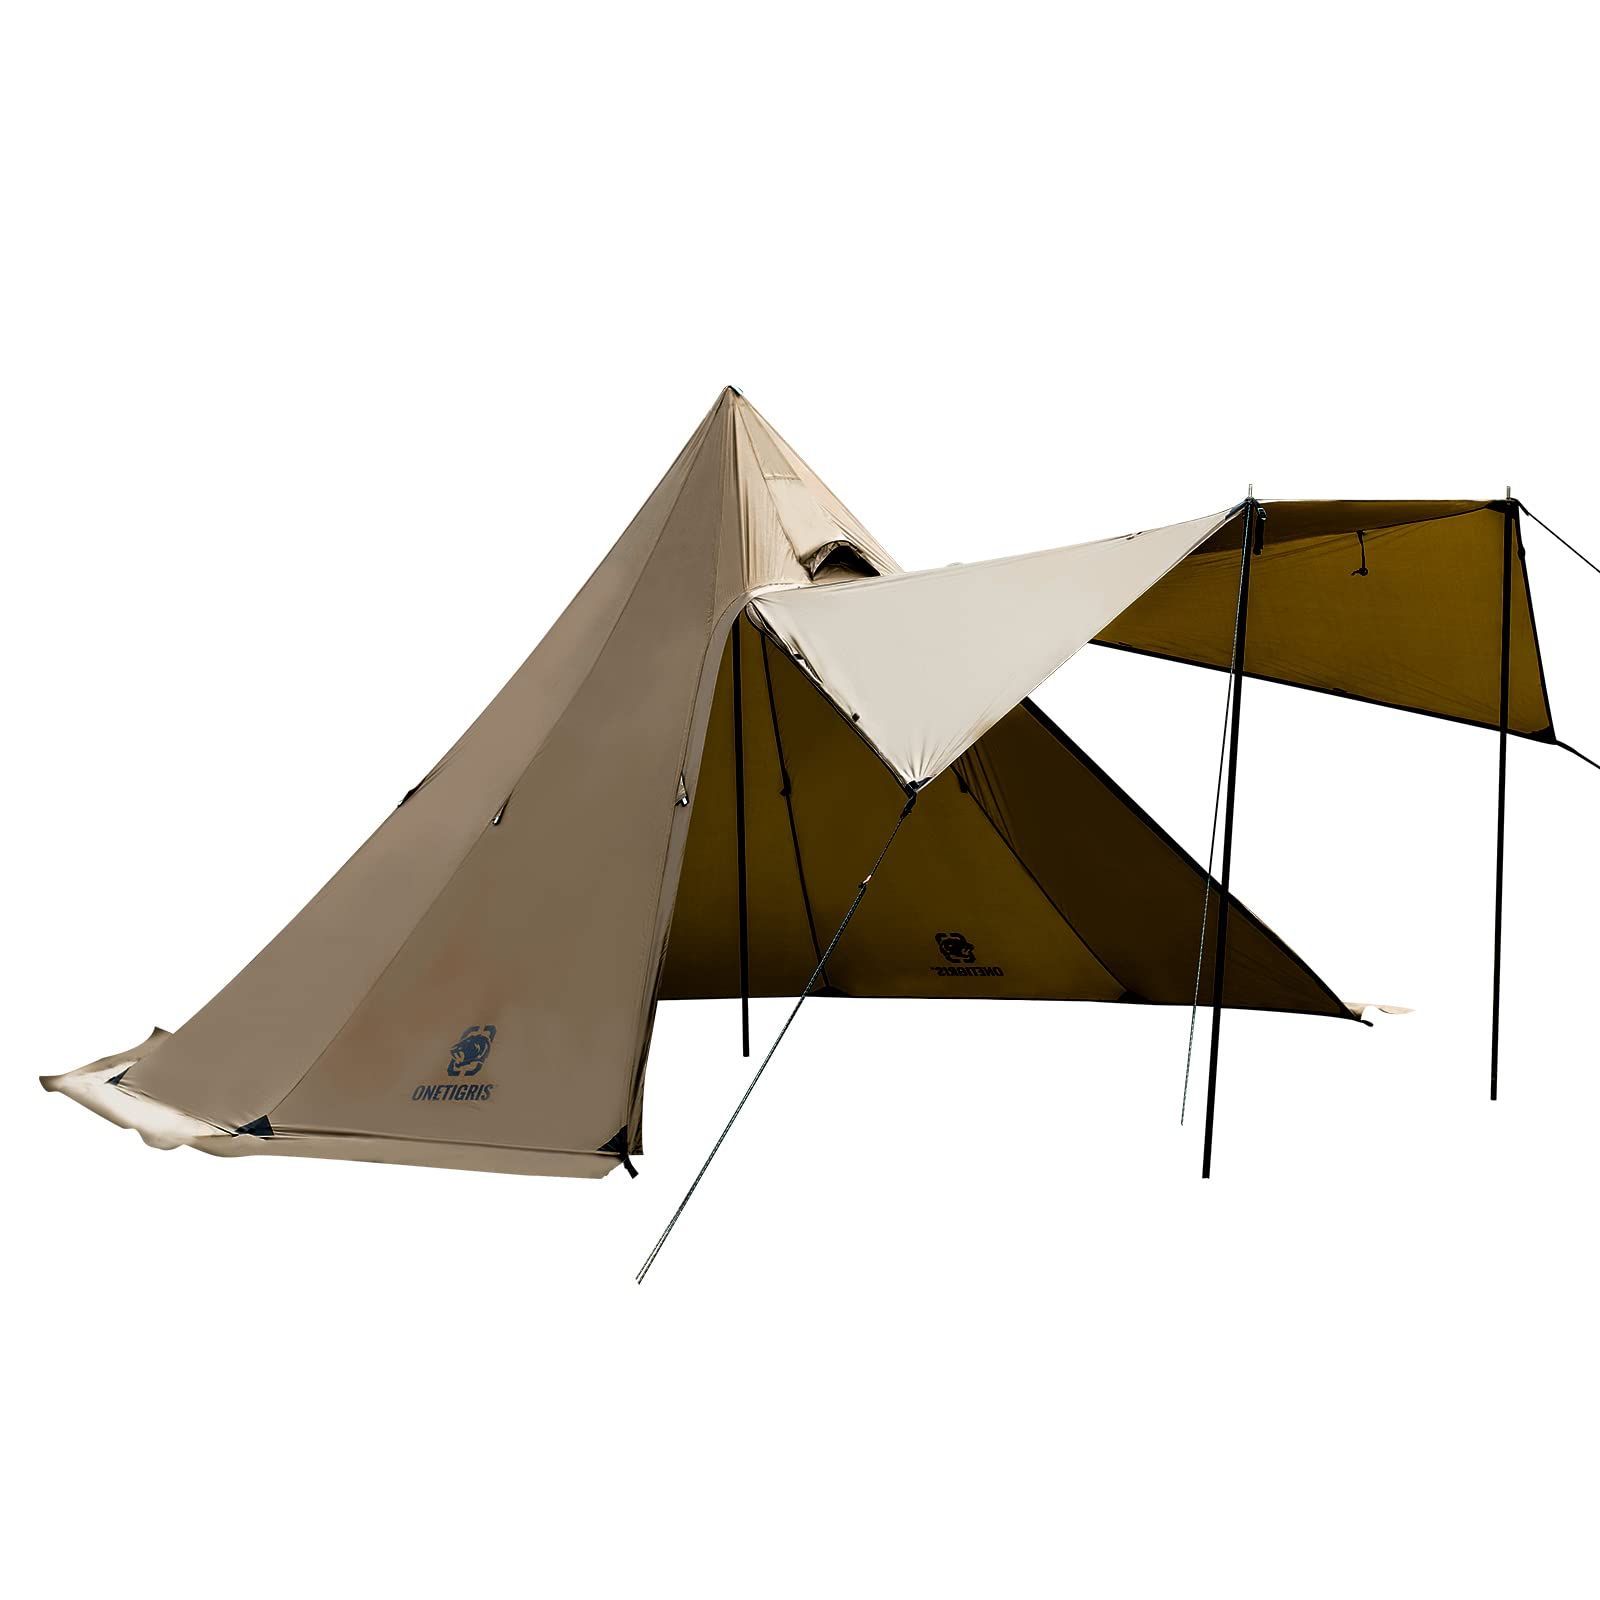 【数量限定】OneTigris Northgaze ワンポールテント メッシュインナーテント シルナイロン製 2-4人用 キャンプ アウトドア 屋外